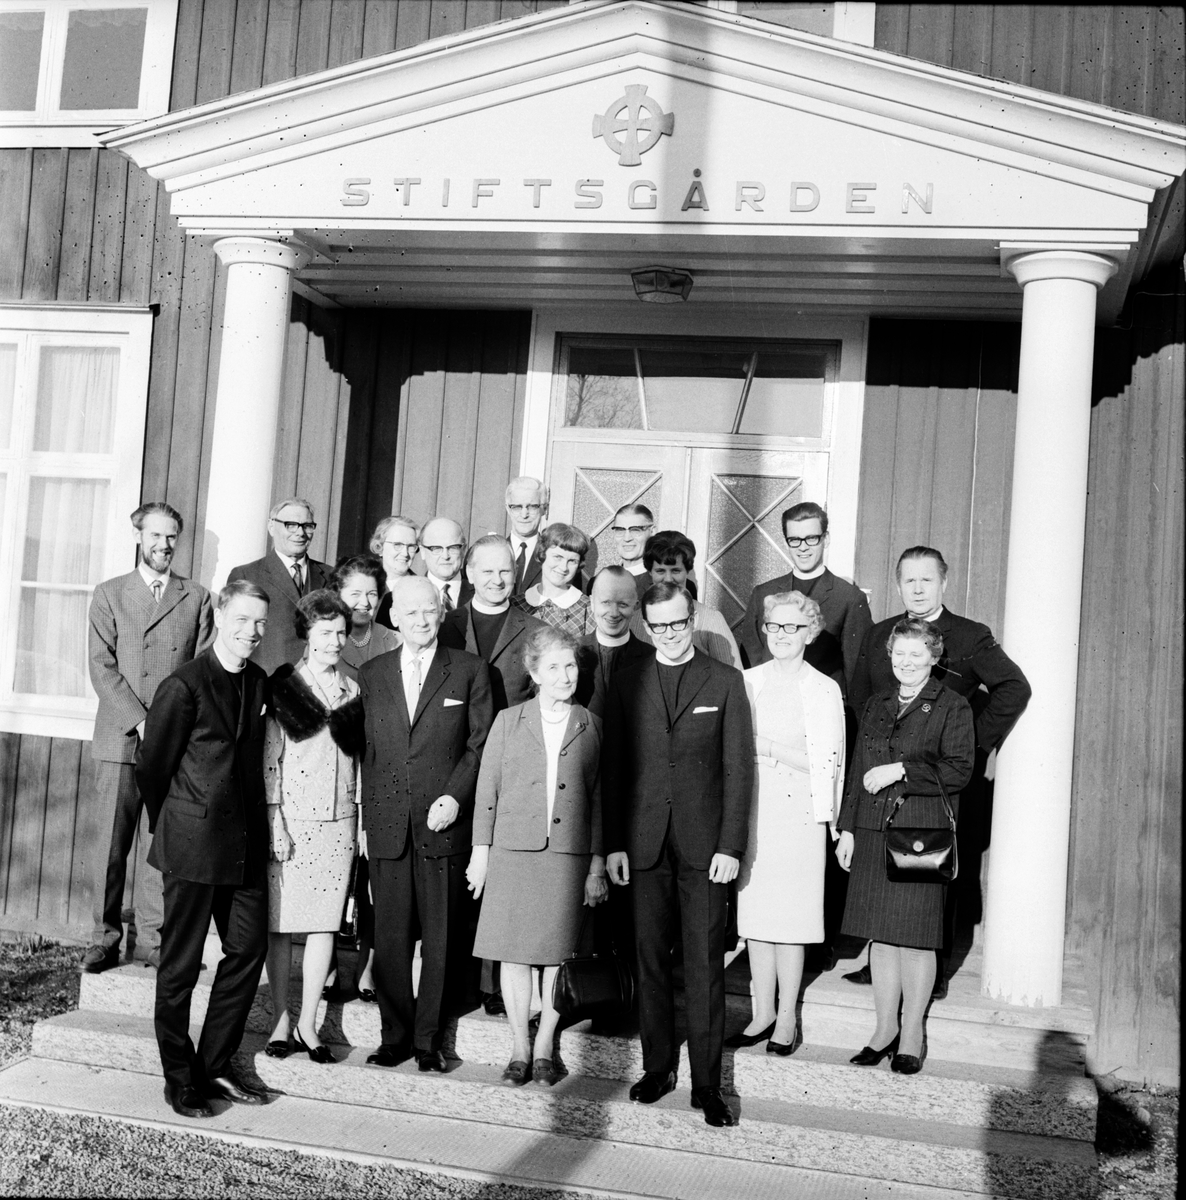 Stiftsgården,
Kontraktsdag,
Voxna kontrakt,
April 1969